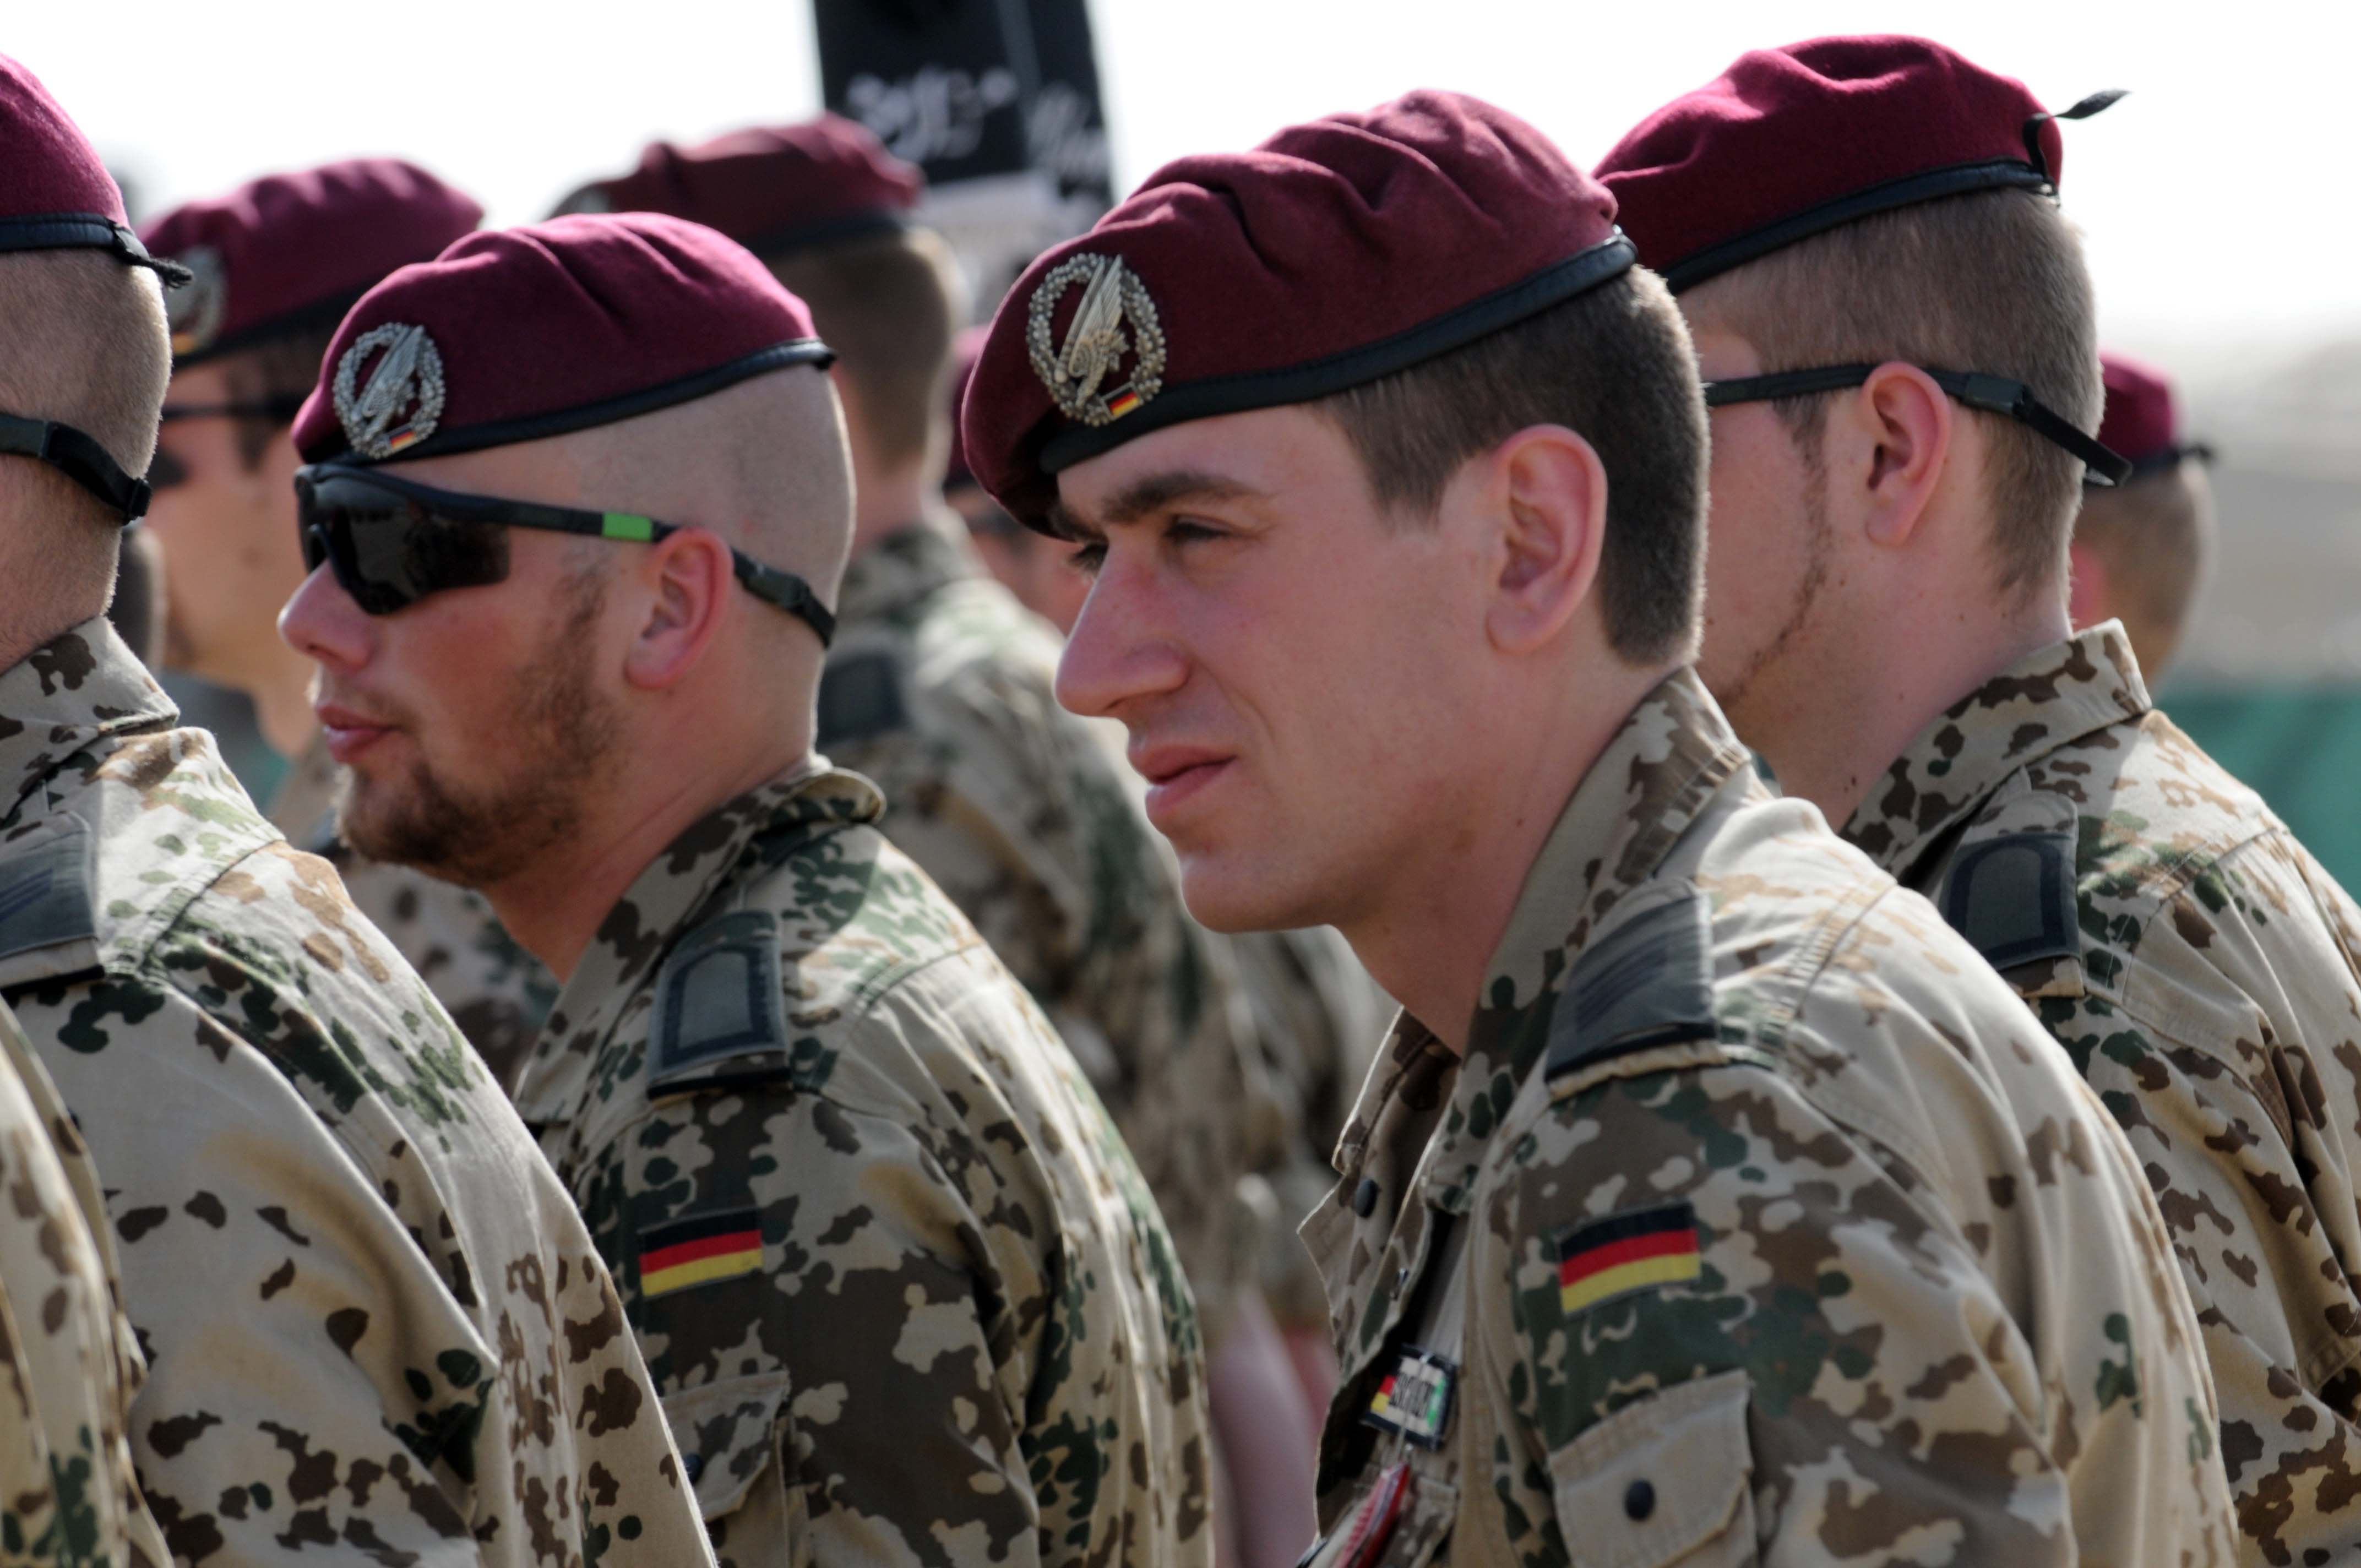 Duitse soldaten in Kunduz Afghanistan 2010-ResoluteSupportMedia-flickr